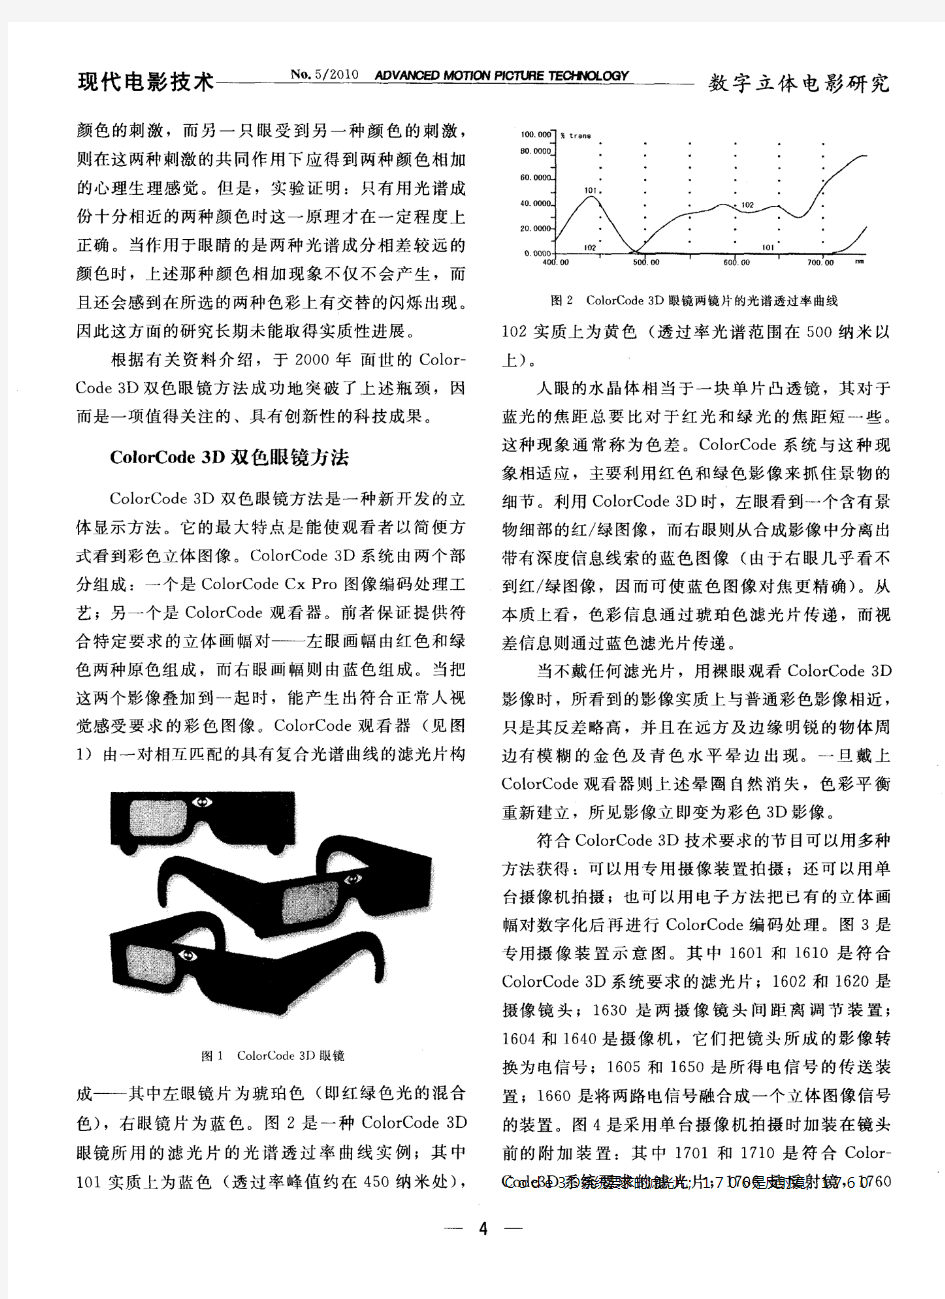 关于3D立体影像显示的双色眼镜方法——对《3D立体影像显示方法丛谈》的补充诠释